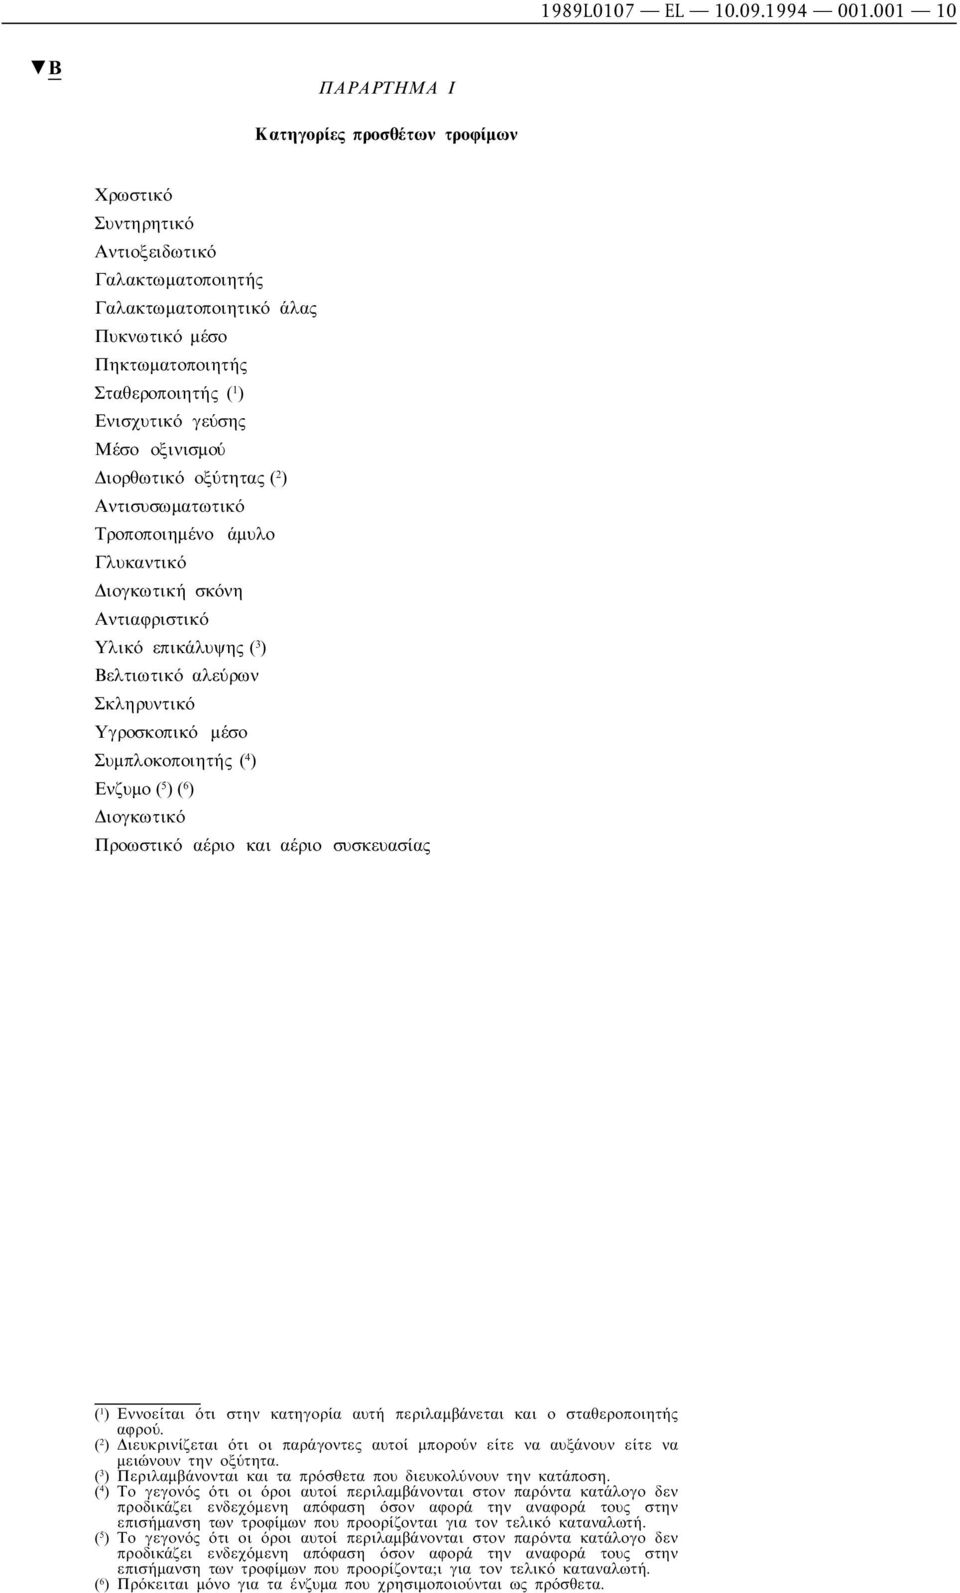 Μέσο οξινισµού ιορθωτικό οξύτητας ( 2 ) Αντισυσωµατωτικό Τροποποιηµένο άµυλο Γλυκαντικό ιογκωτική σκόνη Αντιαφριστικό Υλικό επικάλυψης ( 3 ) Βελτιωτικό αλεύρων Σκληρυντικό Υγροσκοπικό µέσο